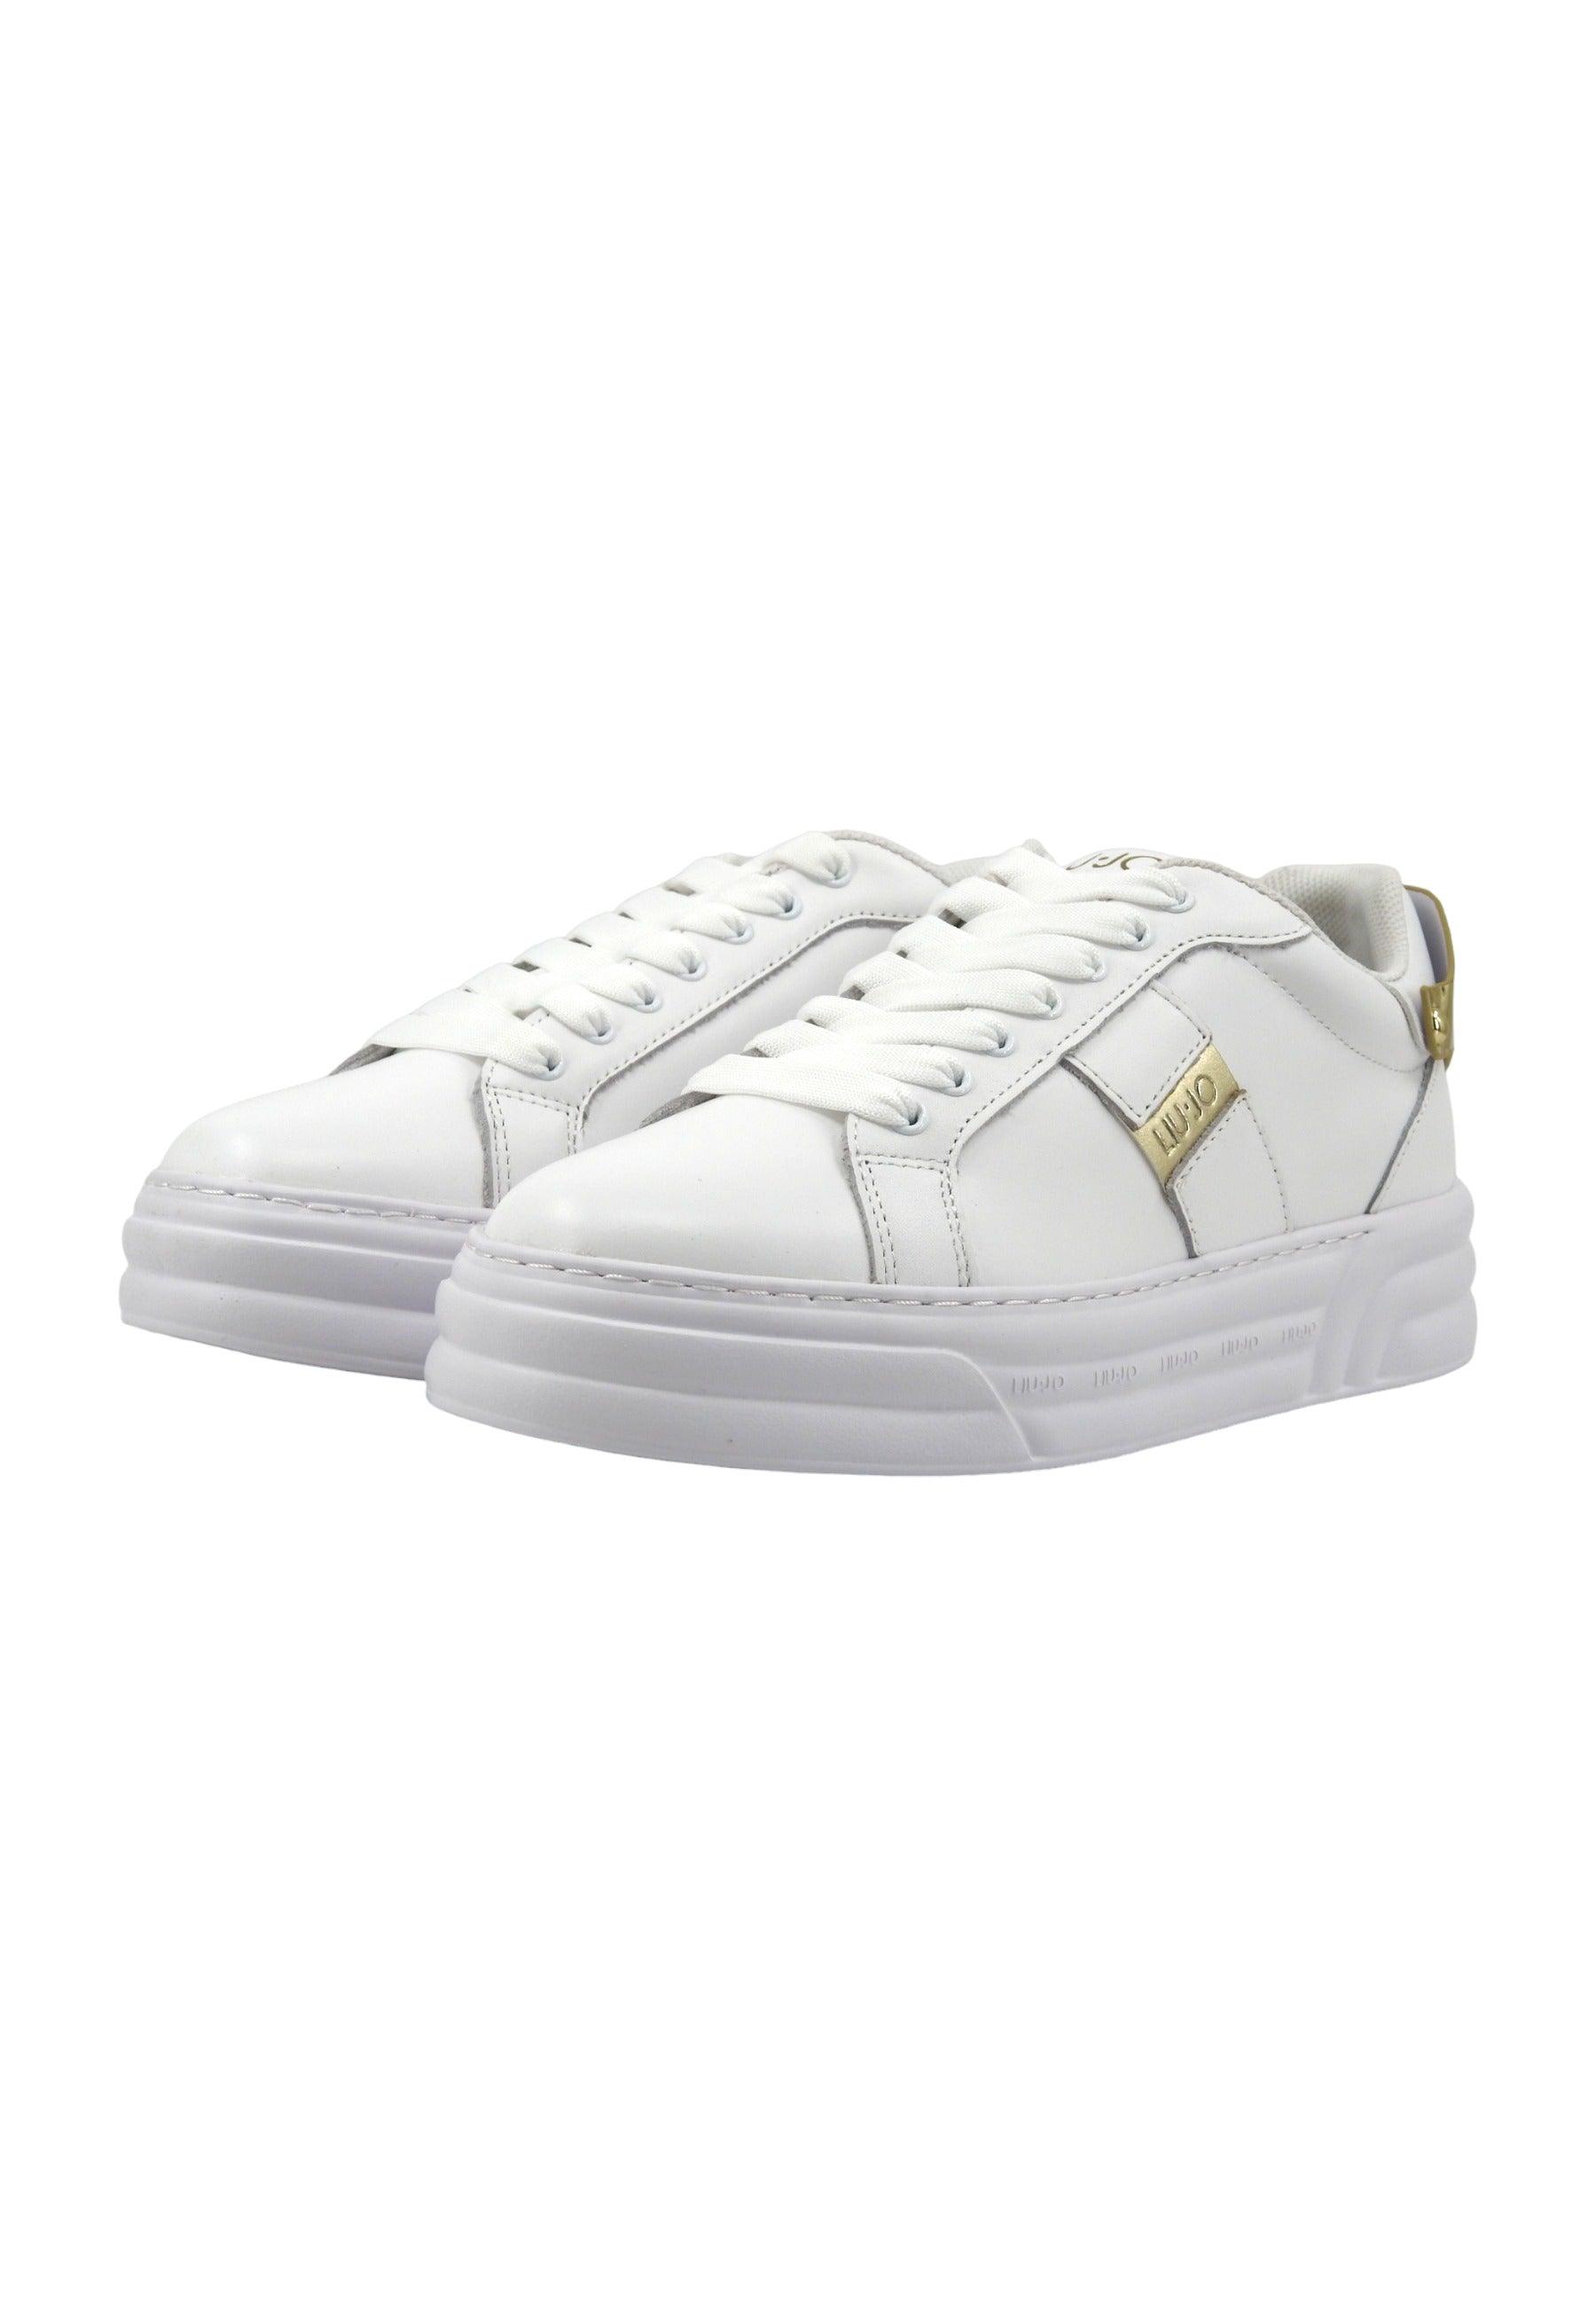 LIU JO Cleo 29 Sneaker Donna White Gold BA4017PX179 - Sandrini Calzature e Abbigliamento